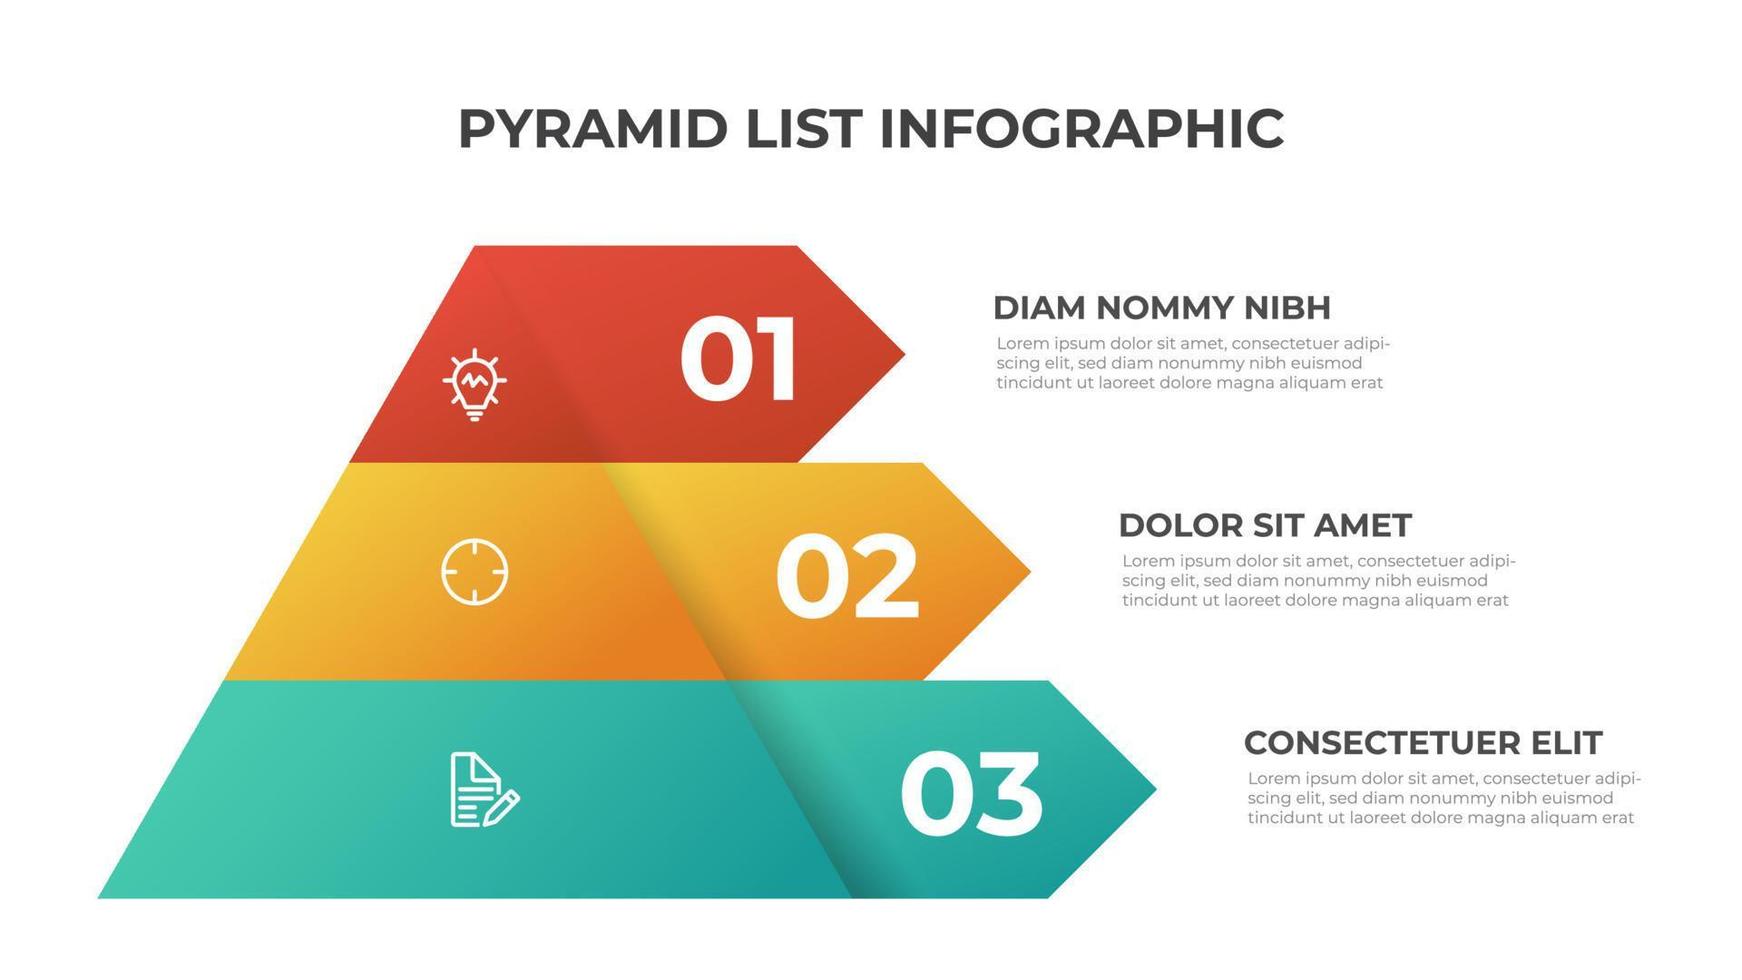 piramide infographic sjabloon vector met 3 lijst, lagen, opties, stappen. lay-out element voor presentatie, rapport, banier, enz.